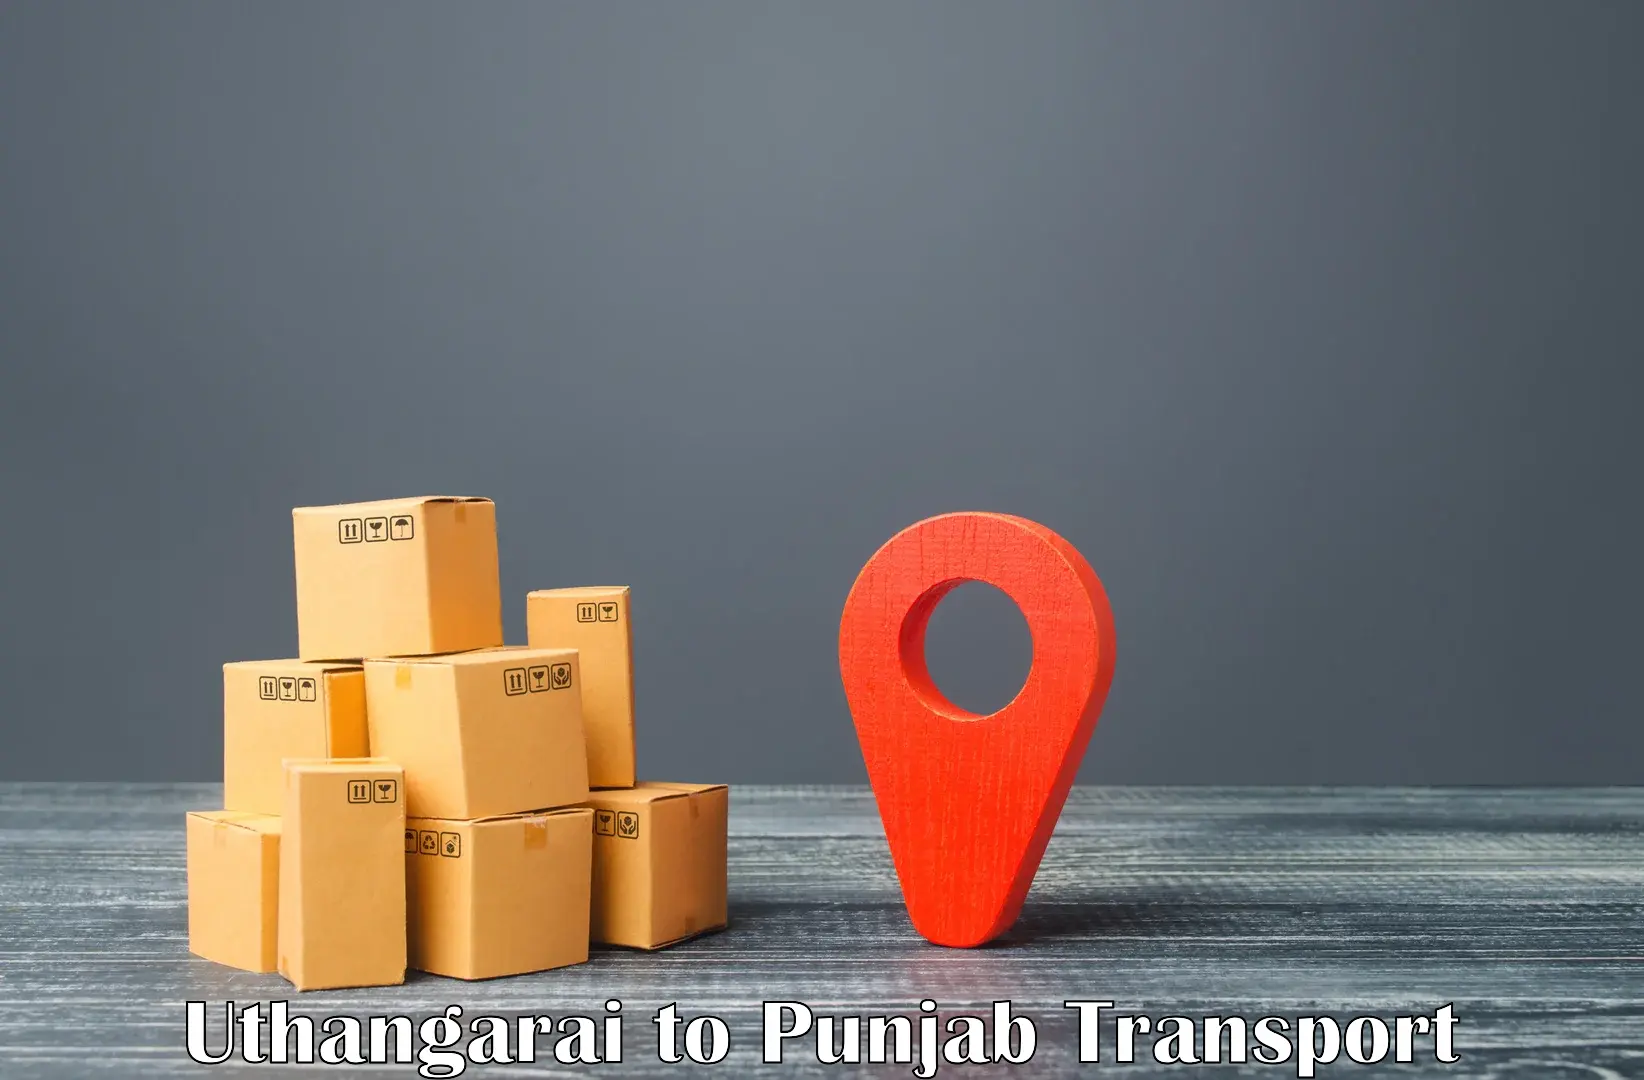 Online transport booking Uthangarai to Punjab